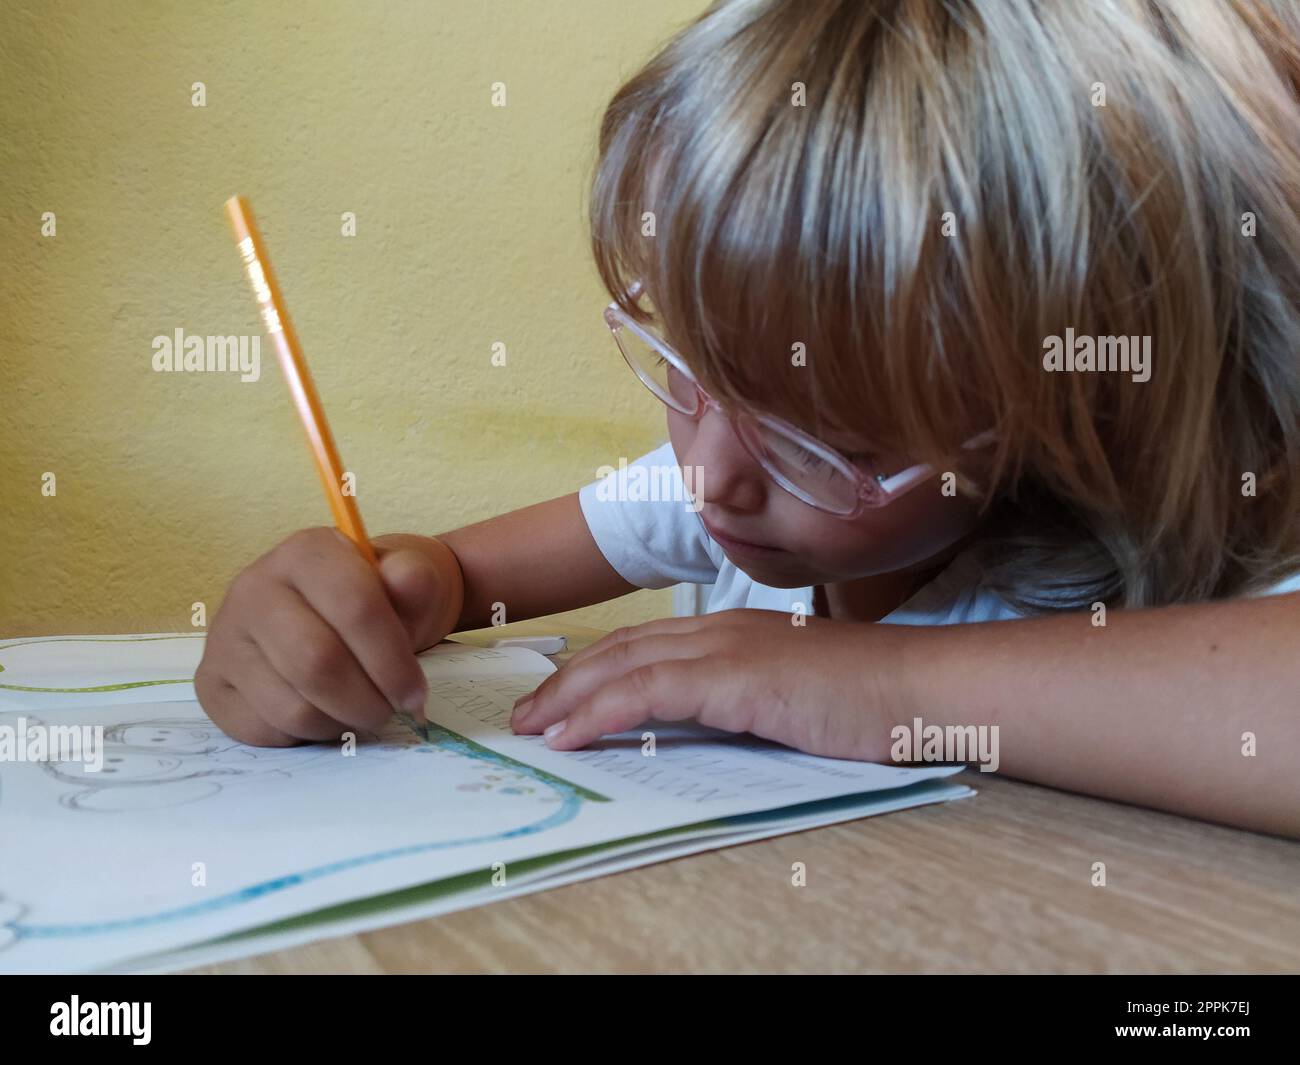 Une fille de 6 ou 7 ans dessine dans un livre. L'enfant fait ses devoirs. Cheveux blonds et lunettes à bordure rose. Concept de formation et d'éducation Banque D'Images